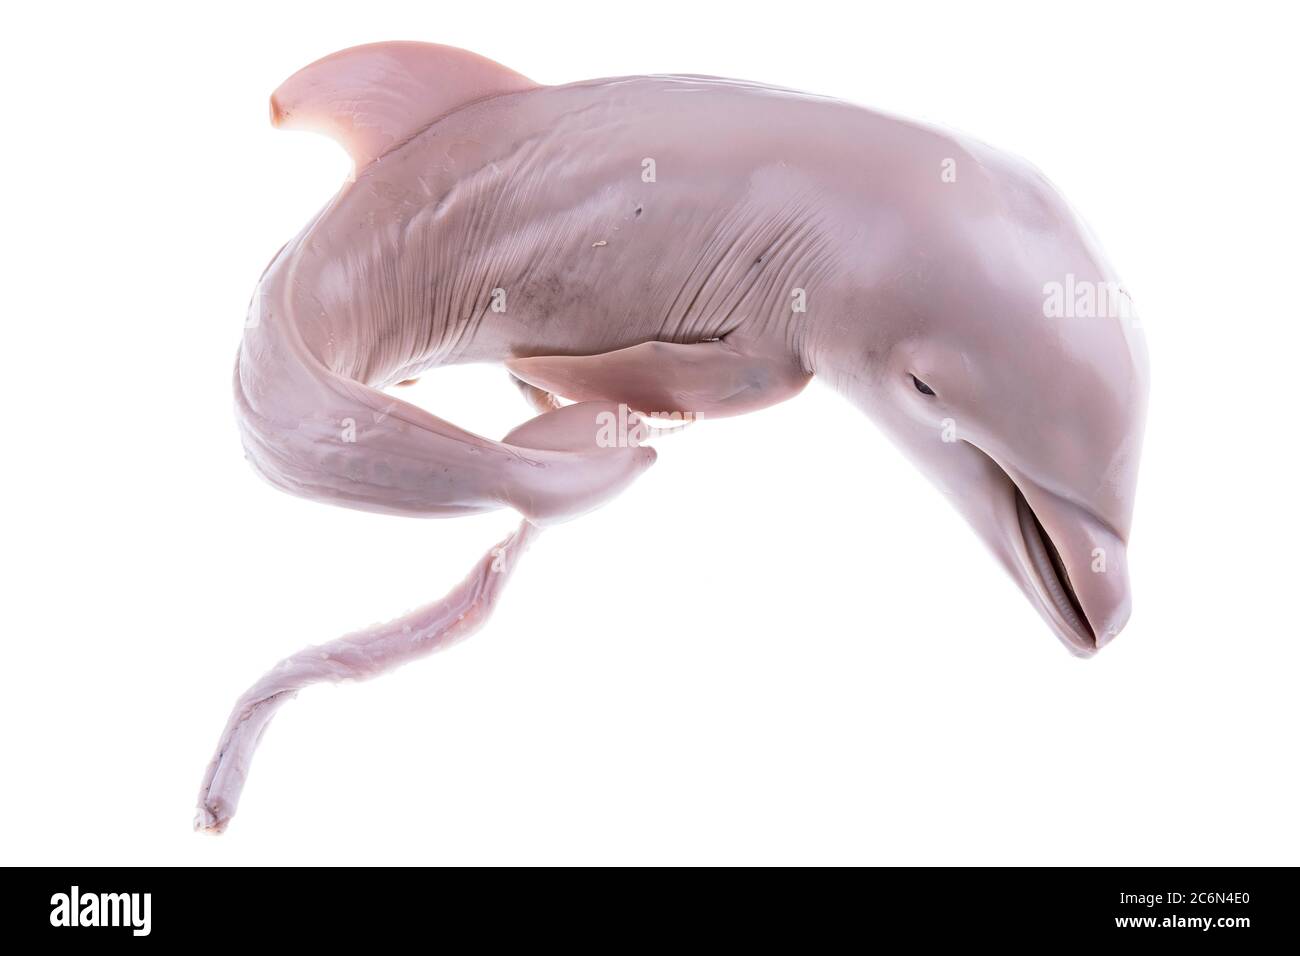 Delphine abgetriebener Embryo aus der Sammlung des spanischen Instituts für Ozeanographie von Malaga, Spanien. Stockfoto